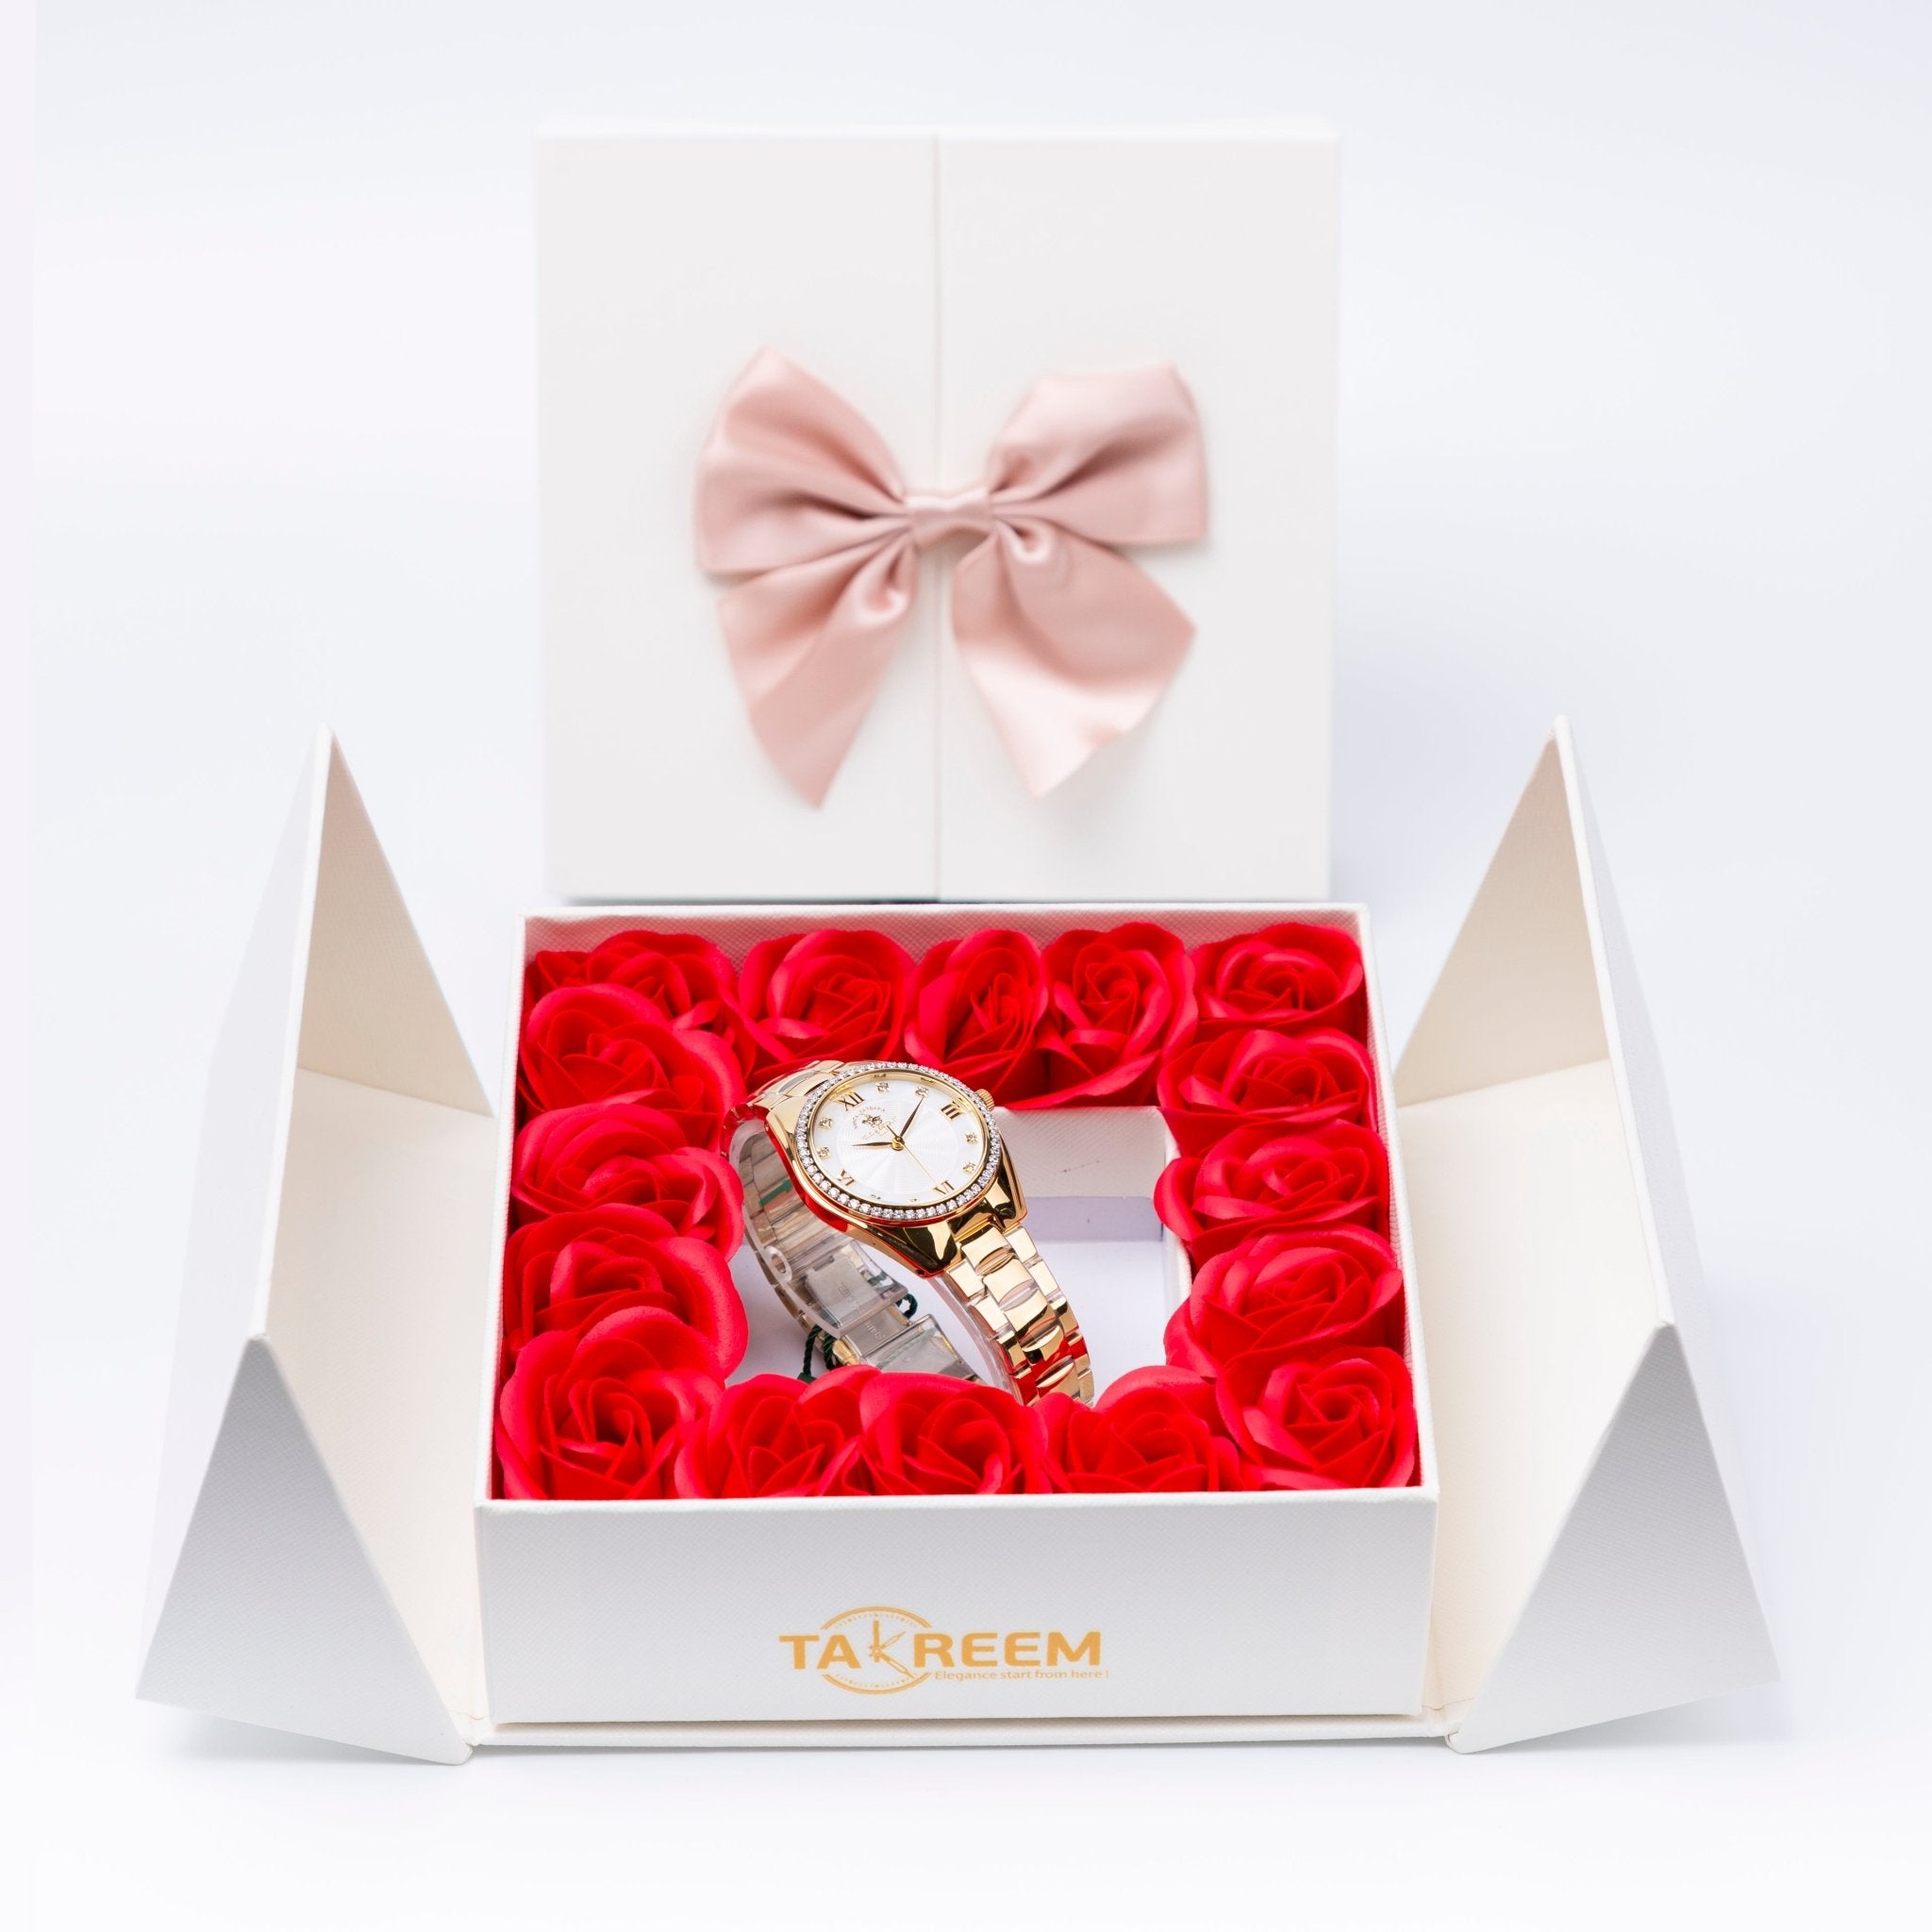 Flower Box - Gift For Women 28 - #shoFlower Box - Gift For Women 28p_name#Flower Box - Gift For Women 28Gift Boxes & TinsTakreemTakreem.joWomenWatchFlower Box - Gift For Women 28 - Takreem.jo